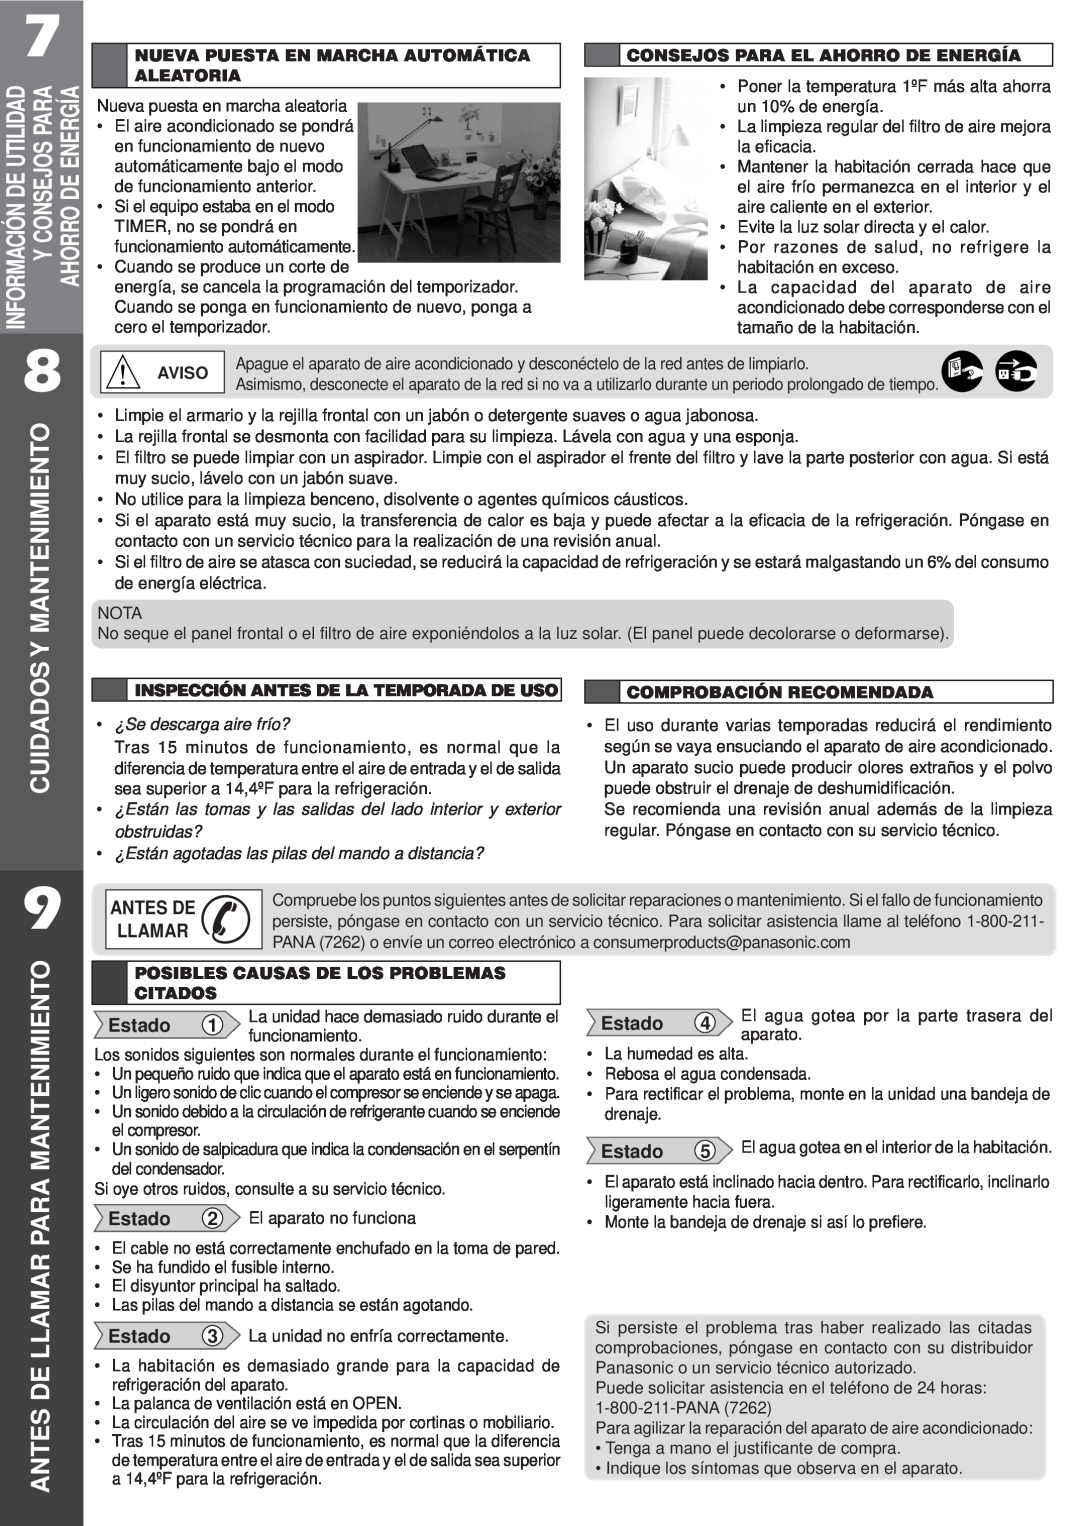 Panasonic CW-XC122VU manual Cuidados, Antes De Llamar Para Mantenimiento, Estado 